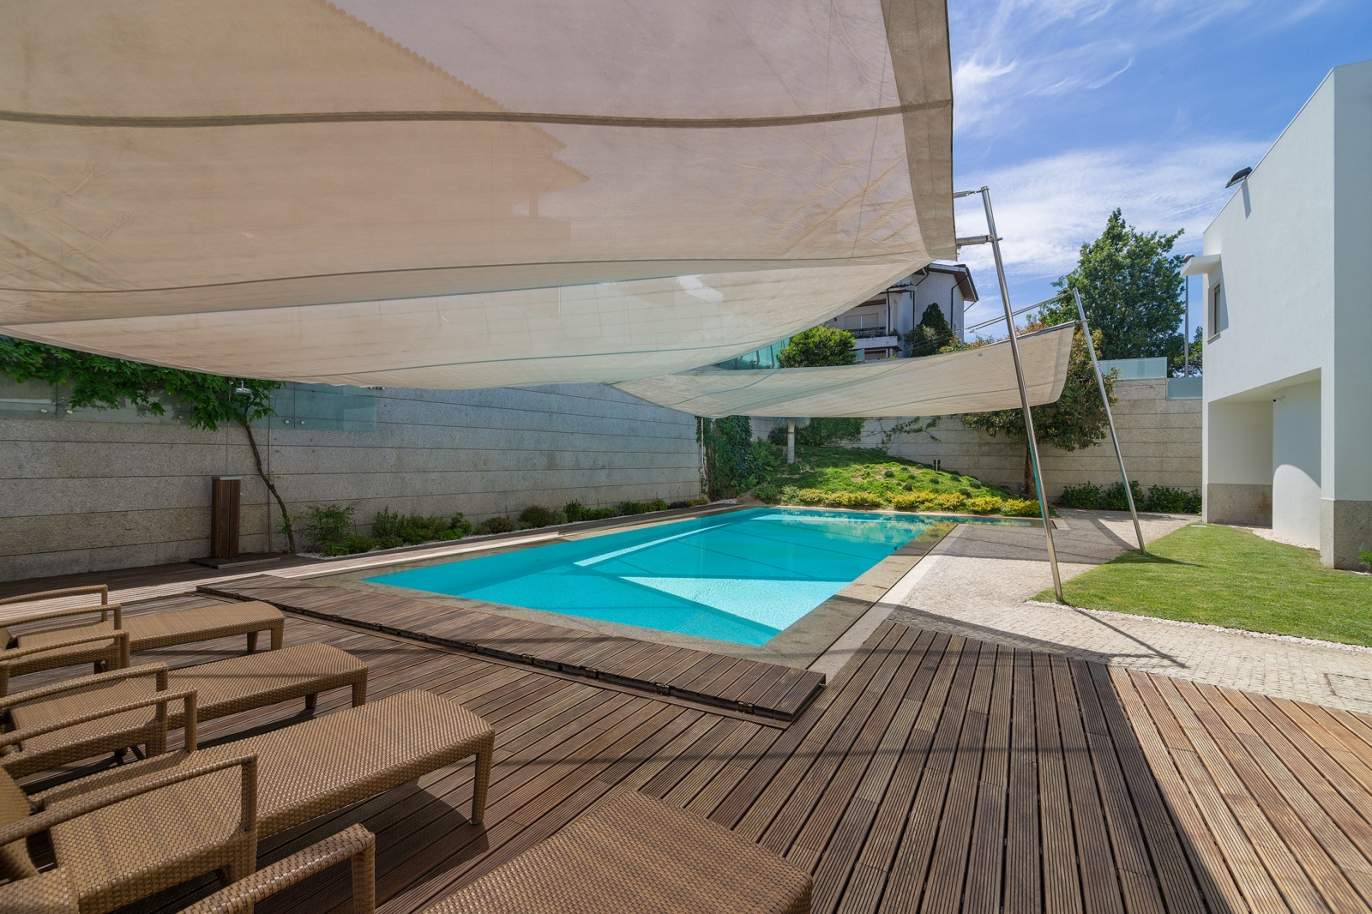 Moradia V3, com piscina e jardim, para venda, na Trofa, Porto, Portugal_154944